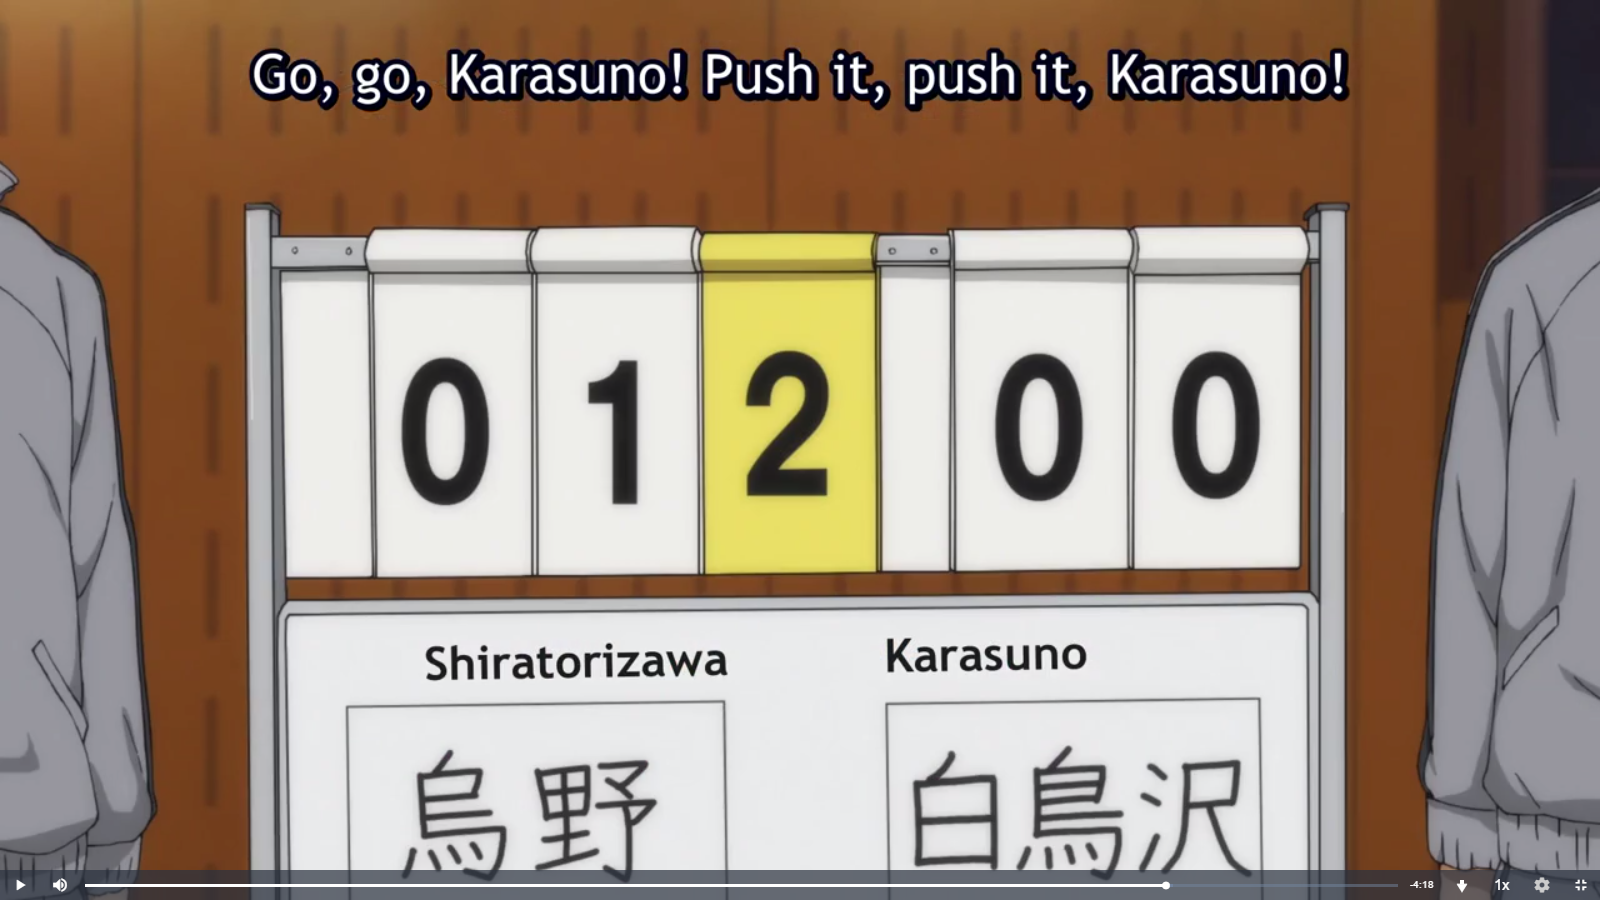 Haikyuu!!: Karasuno Koukou VS Shiratorizawa Gakuen Koukou Episode 8  Discussion - Forums 